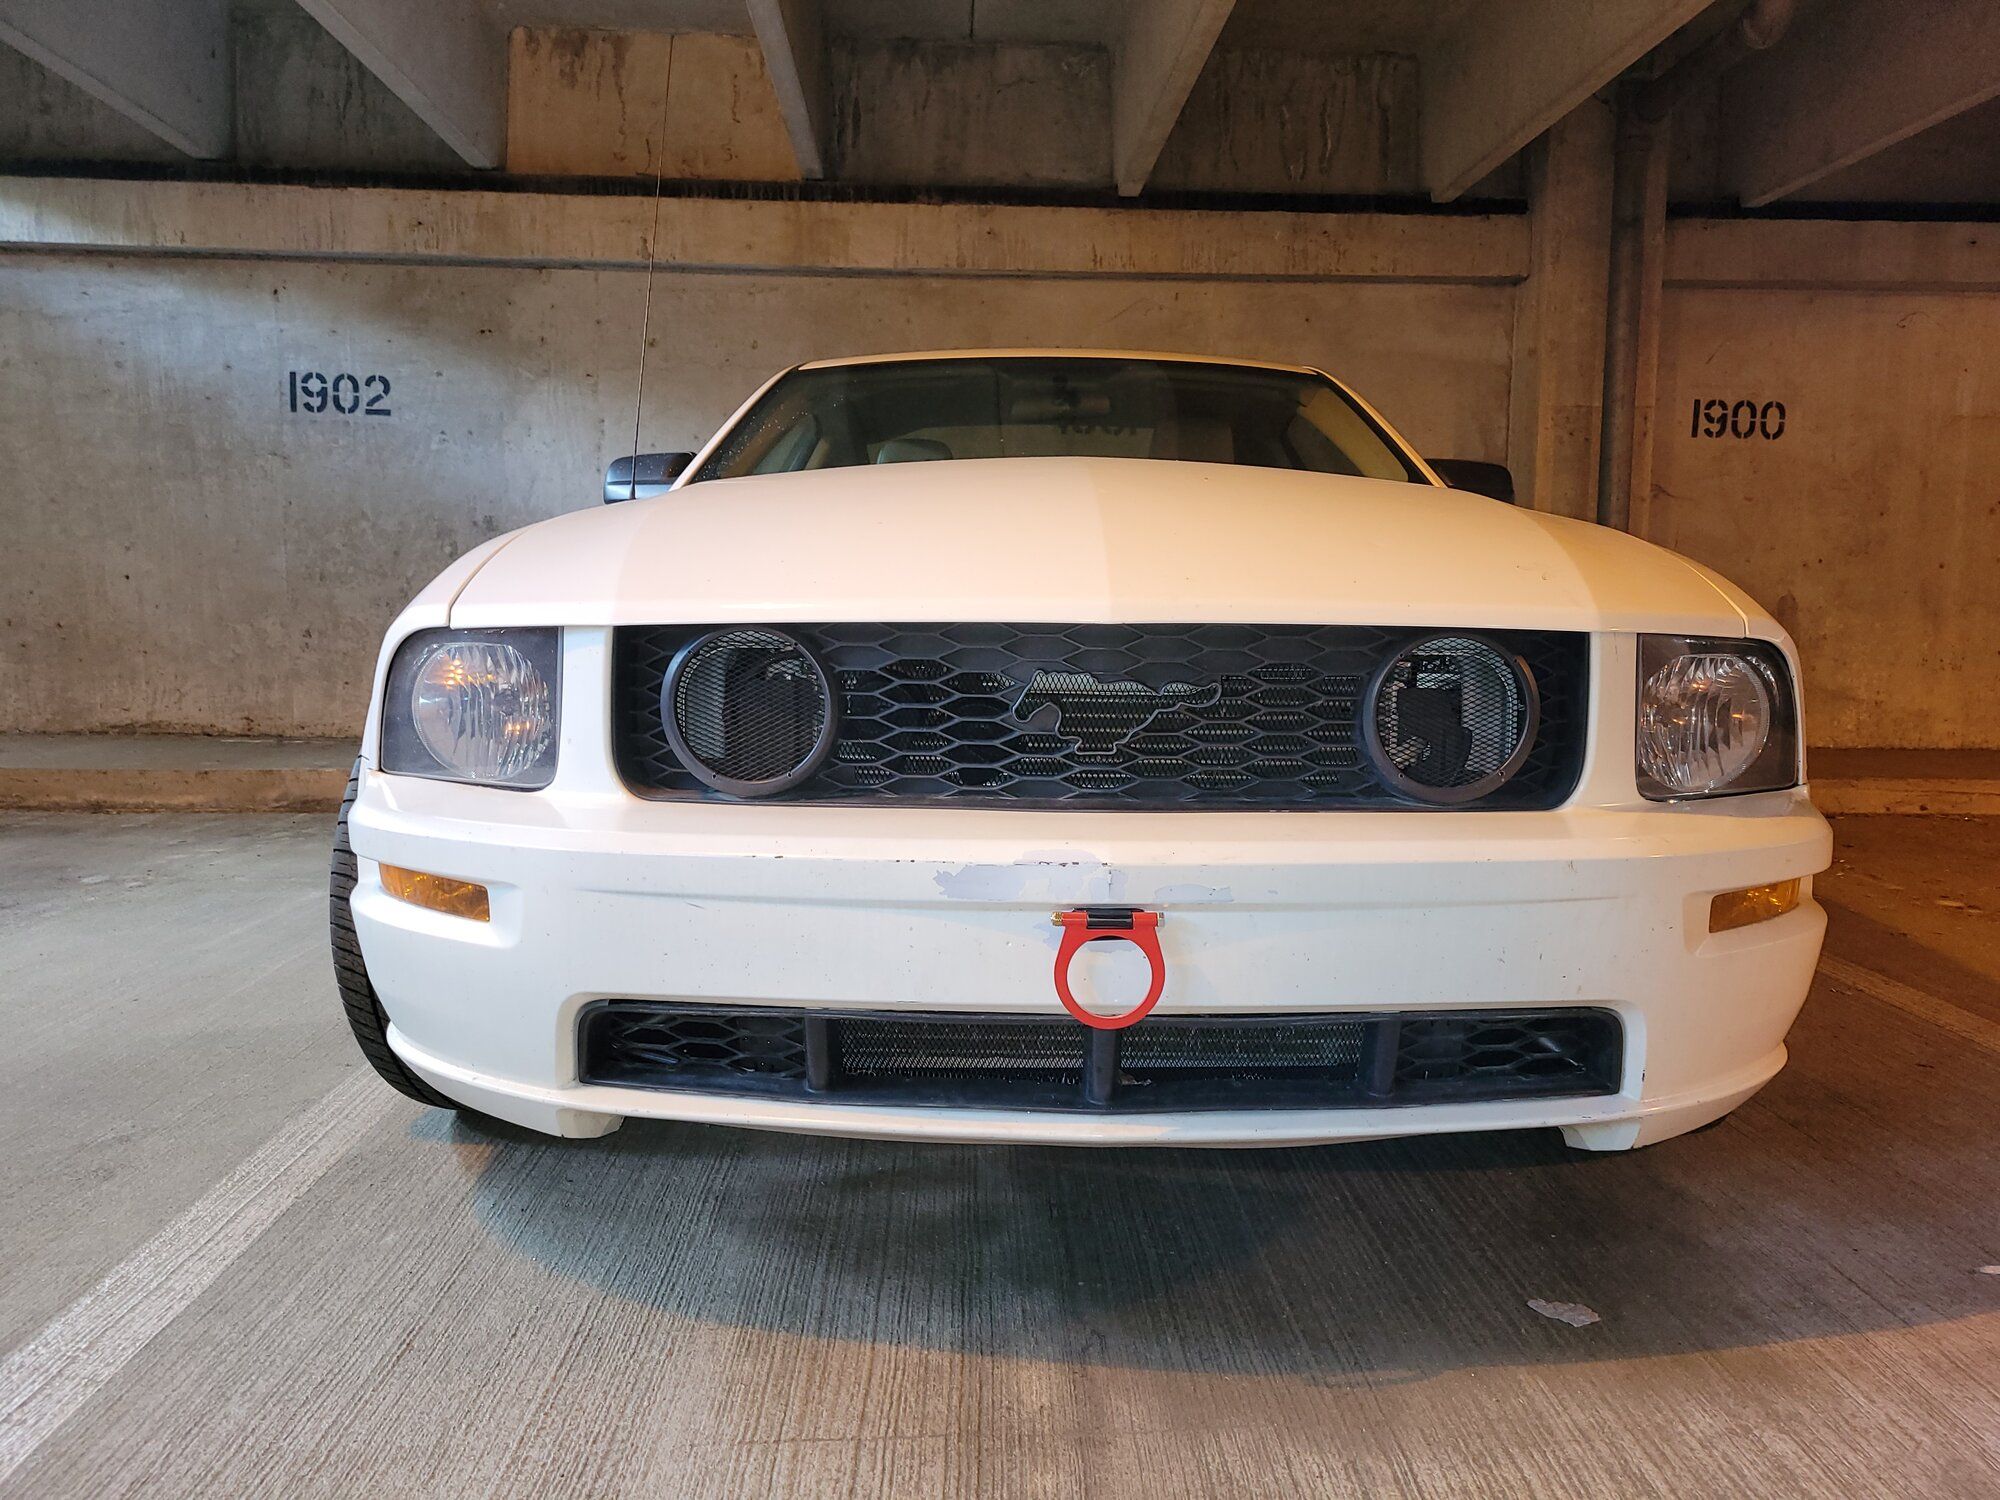 2009 Mustang
GT_46L  (Vanilla sleeper)